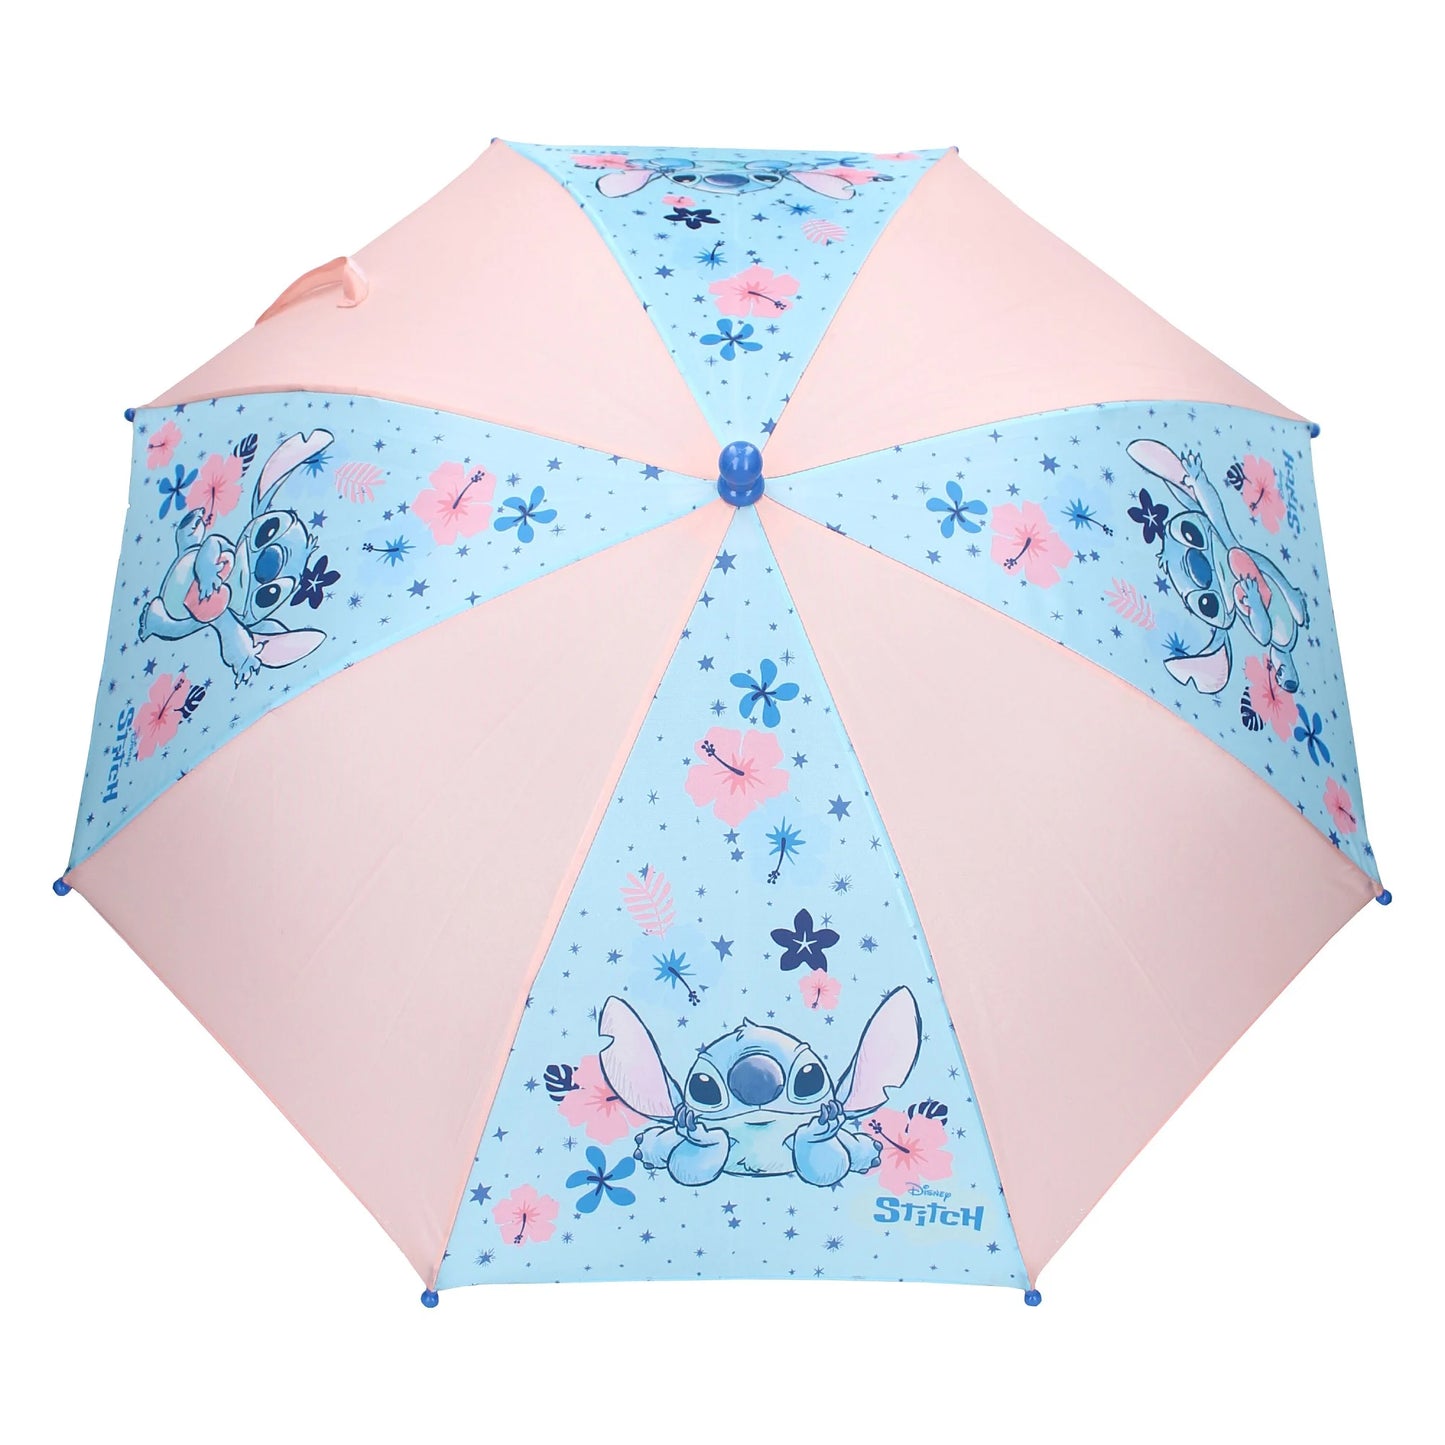 Bescherm jezelf tegen de regen met deze vrolijke Stitch-paraplu, verkrijgbaar in blauw en roze.